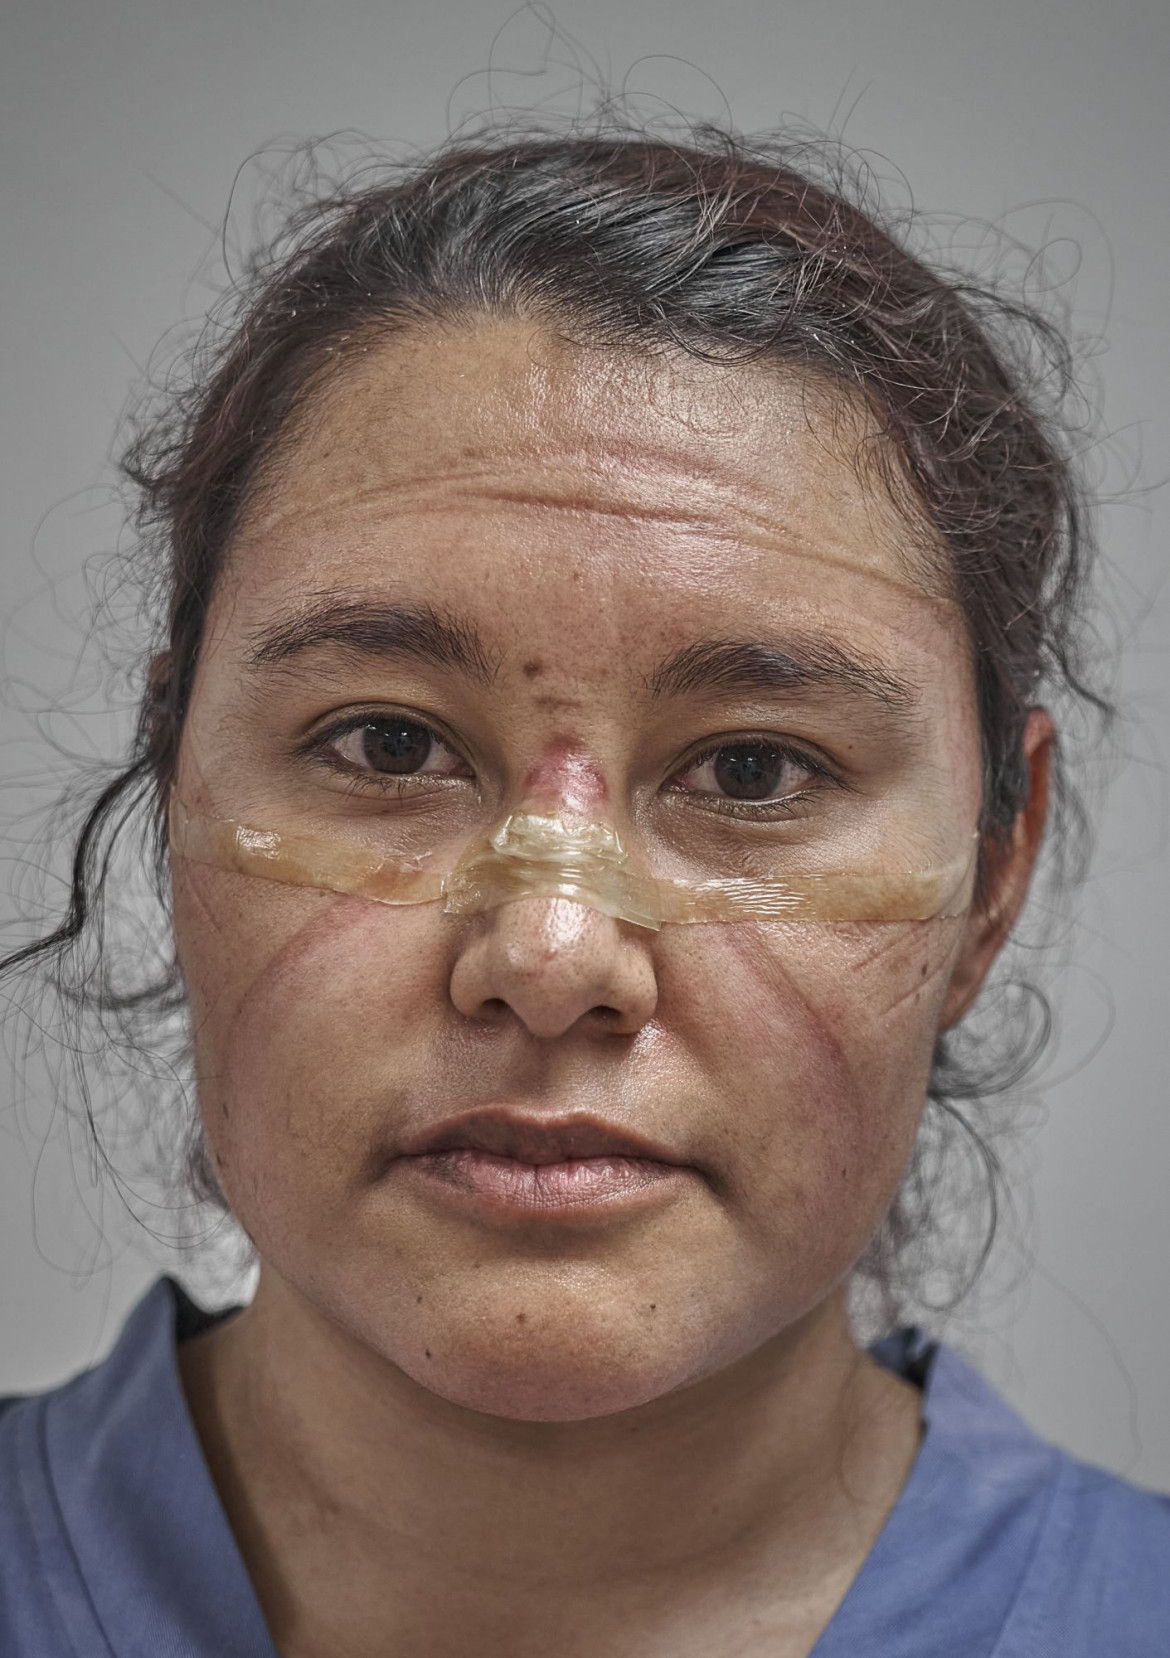 fot. Iván Macías, Meksyk, "COVID-19 First Responder", nominacja w kategorii "Portret - zdjęcie pojedyncze"<br></br><br></br>Lekarz pod koniec swojej zmiany w czasie pandemi. ślady pozostawione przez maskę ochronną i gogle są wyraźnie widoczne na jej twarzy, Meksyk, 19 maja 2021 r.<br></br><br></br>Pracownicy służby zdrowia na całym świecie stanęli na czele walki z nowym koronawirusem, COVID-19, który powstał w Chinach i szybko rozprzestrzenił się na cały świat. Spośród 37 krajów przebadanych przez Forbes w listopadzie 2020 roku, Meksyk zgłosił 78200 zakażeń COVID wśród pracowników służby zdrowia. Po uwzględnieniu wielkości populacji był to najwyższy wskaźnik na świecie.<br></br><br></br>Pierwsze przypadki COVID-19 w Meksyku potwierdzono pod koniec lutego. W marcu prezydent López Obrador zmniejszył stopień zagrożenia ze strony wirusa, umożliwiając kontynuowanie dużych zgromadzeń publicznych i przygotowań do sezonu turystycznego. Gdy liczba przypadków zaczęła rosnąć, pod koniec marca weszła w życie blokada, ale w kwietniu prezydent ogłosił, że wirus jest pod kontrolą.<br></br><br></br>13 maja, mniej niż 24 godziny po tym, jak kraj ogłosił swój najbardziej śmiertelny dzień podczas pandemii (353 zgony), Obrador zalecił złagodzenie środków blokujących. Meksyk znalazł się również pod presją Stanów Zjednoczonych, aby ponownie otworzyć swoją gospodarkę w celu zapewnienia kontynentalnych łańcuchów dostaw. Wyczerpani pracownicy służby zdrowia stawali się coraz bardziej krytyczni wobec polityków, którzy nie wymuszali surowszych przepisów przeciw COVID.